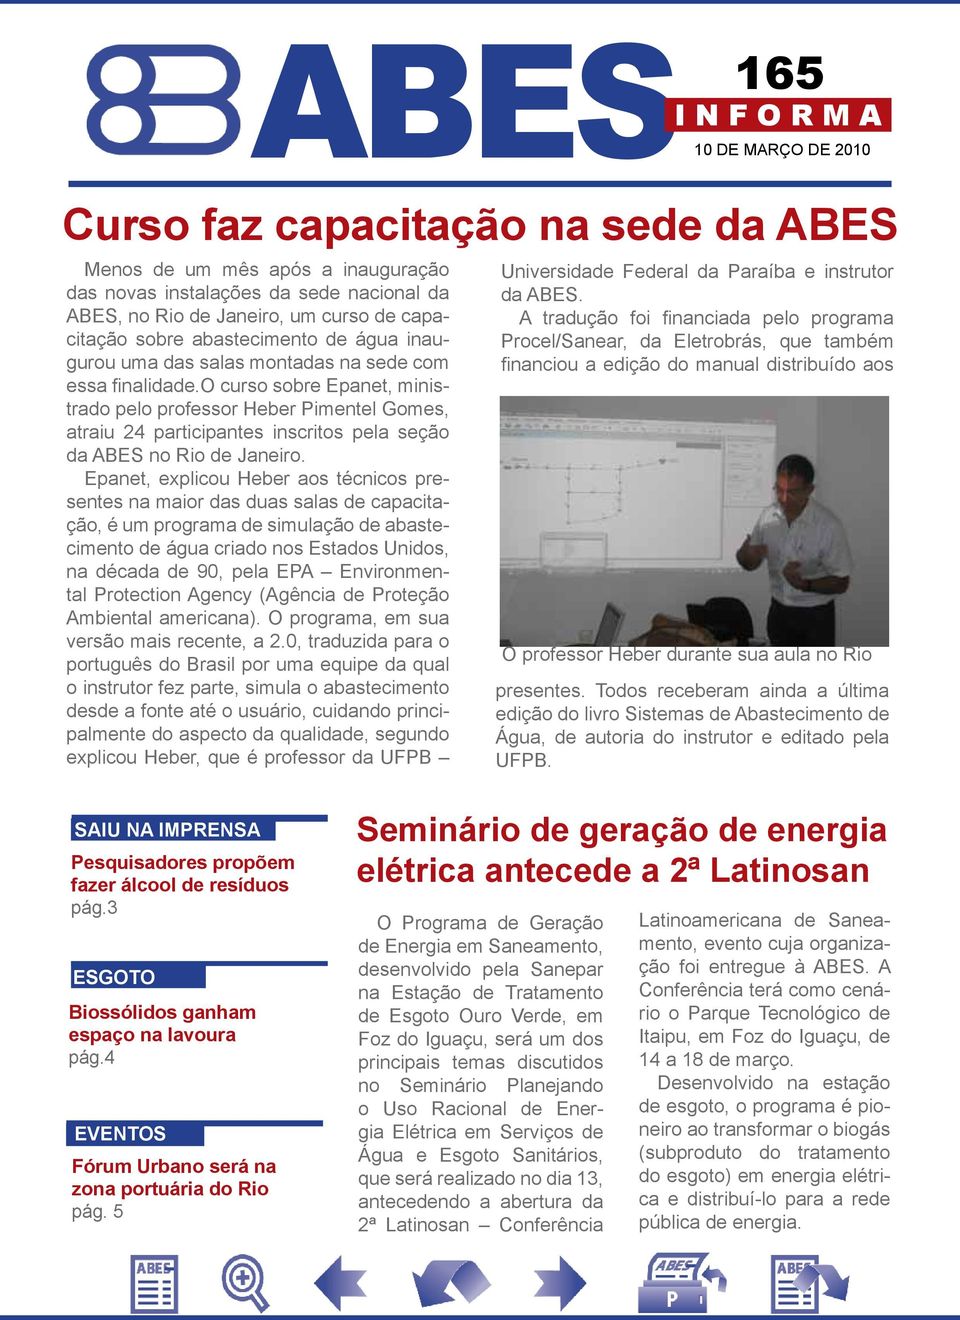 o curso sobre Epanet, ministrado pelo professor Heber Pimentel Gomes, atraiu 24 participantes inscritos pela seção da ABES no Rio de Janeiro.